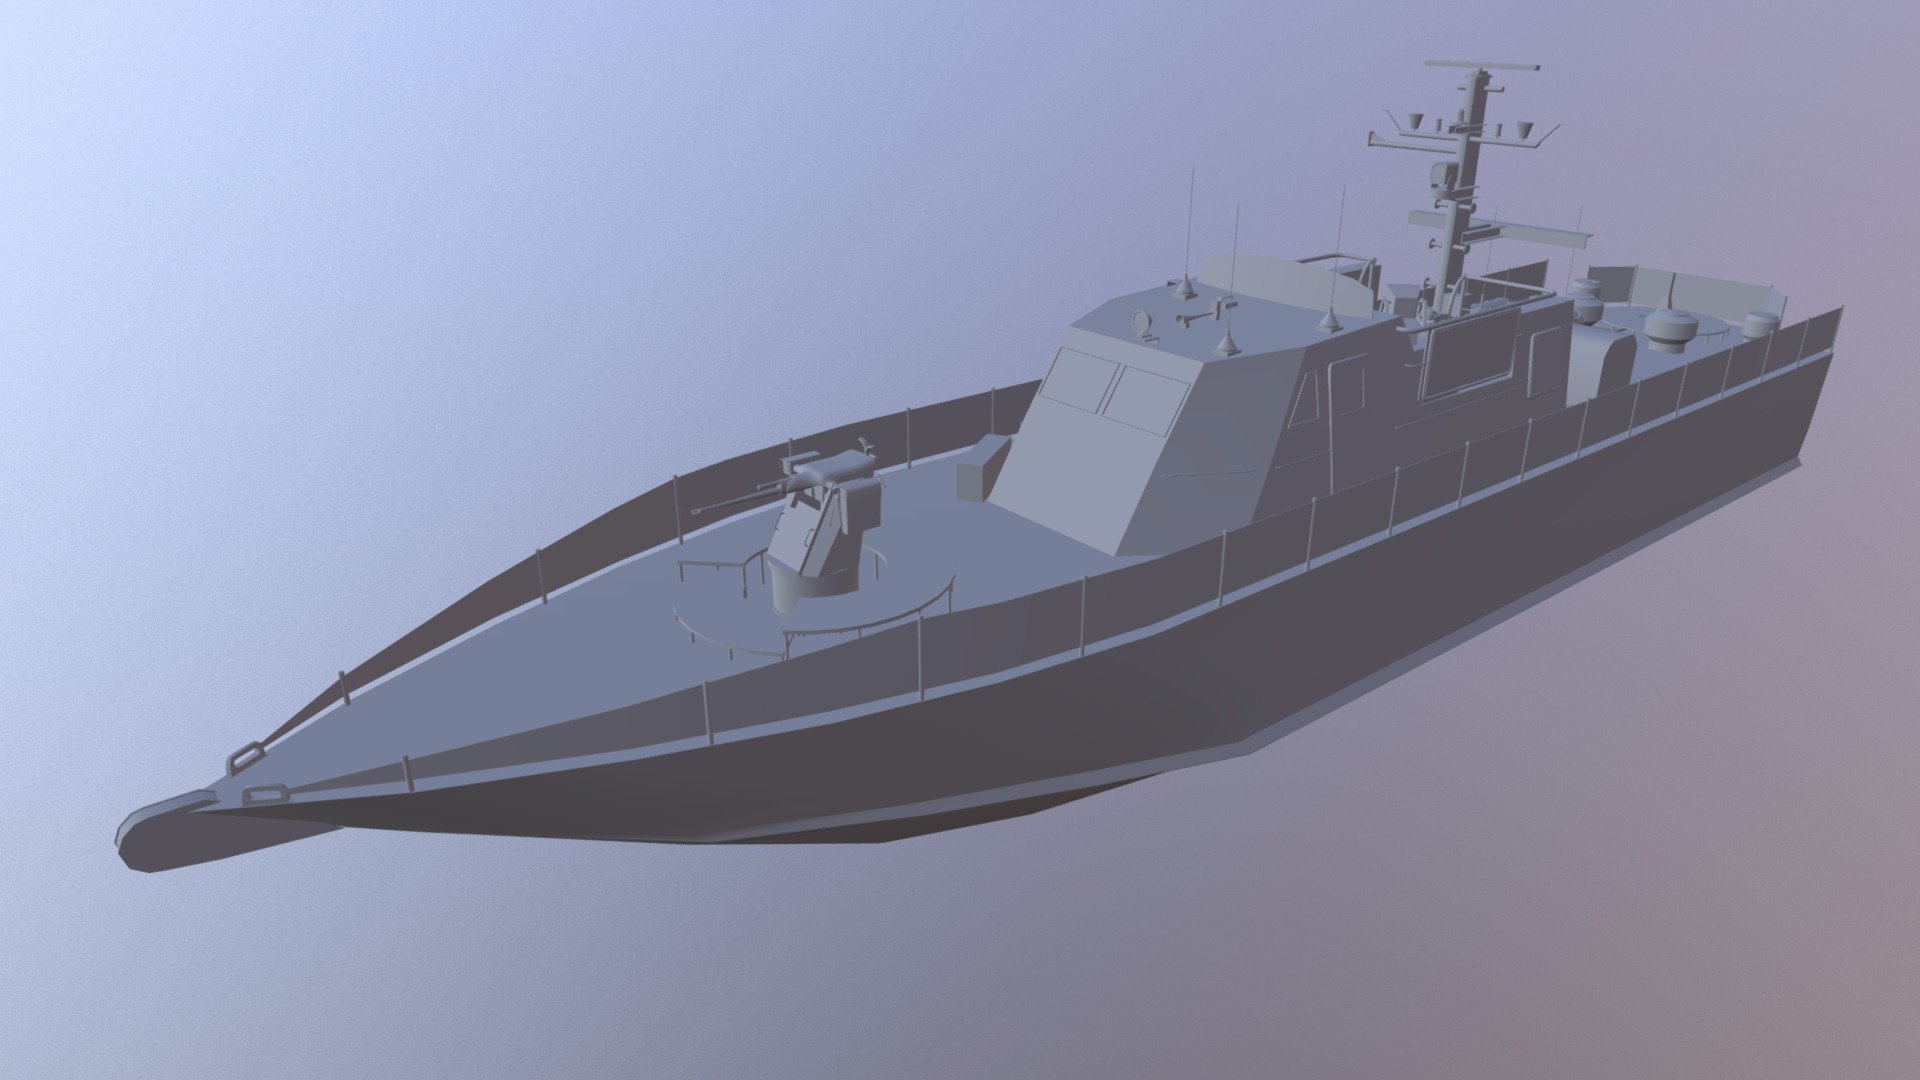 Super Dvora Mk III-class Patrol Boat